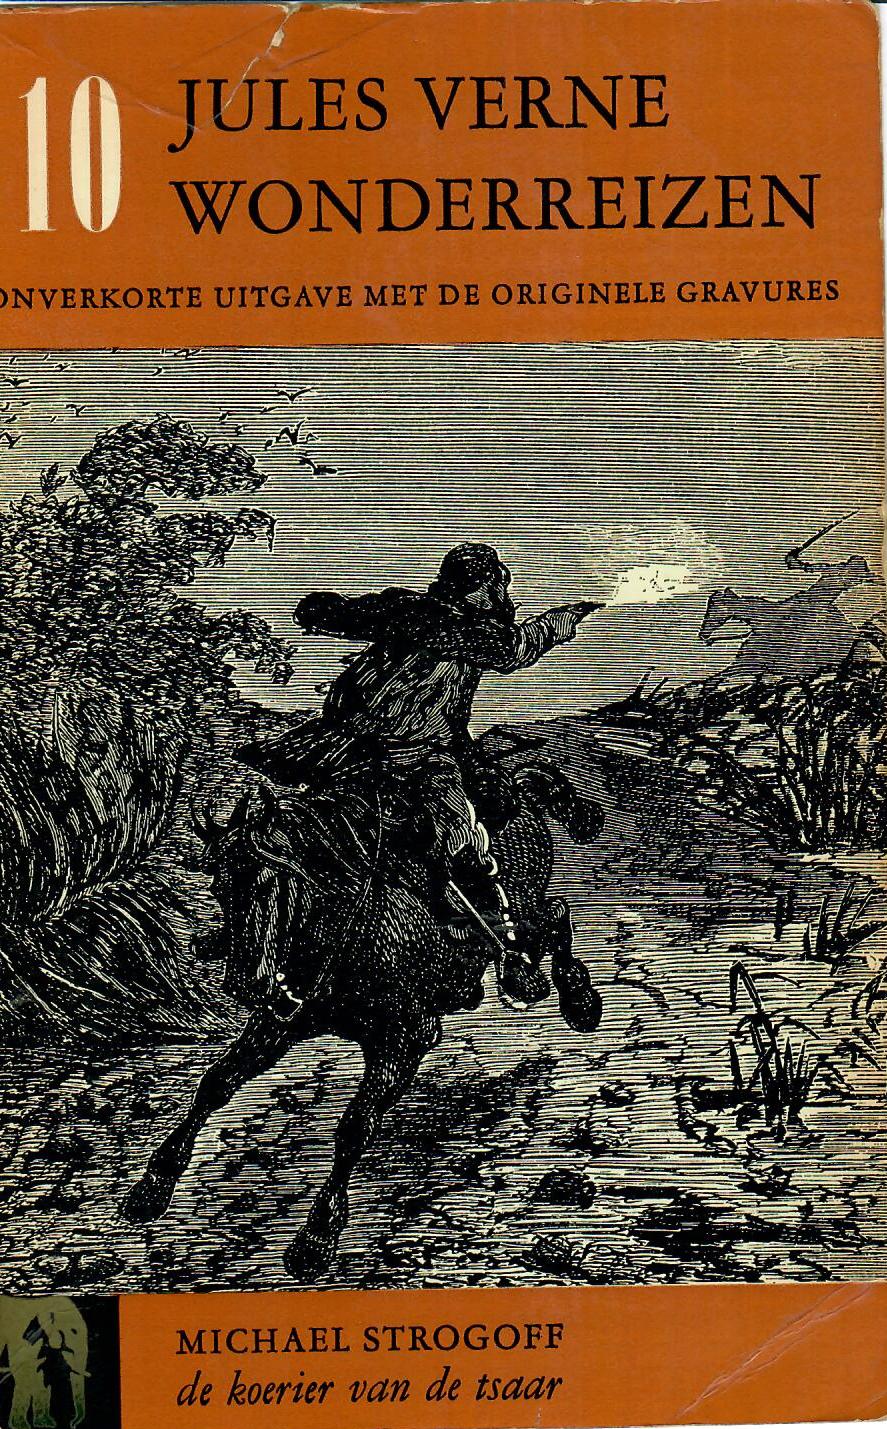 Jules Verne - Michael Strogoff, de koerier van de Tsaar